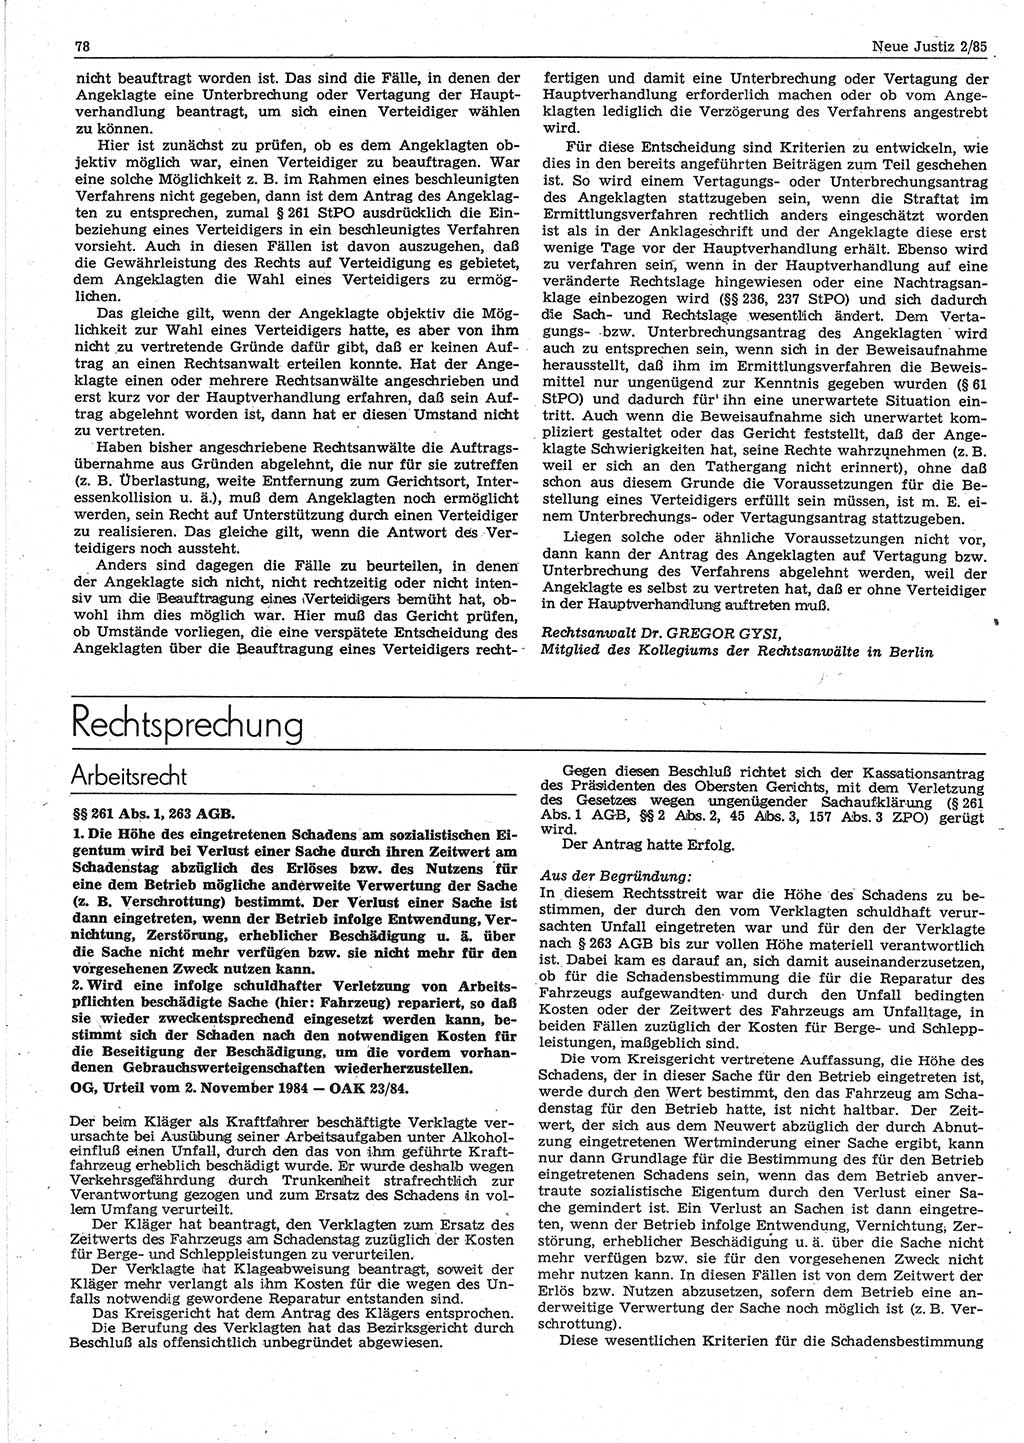 Neue Justiz (NJ), Zeitschrift für sozialistisches Recht und Gesetzlichkeit [Deutsche Demokratische Republik (DDR)], 39. Jahrgang 1985, Seite 78 (NJ DDR 1985, S. 78)